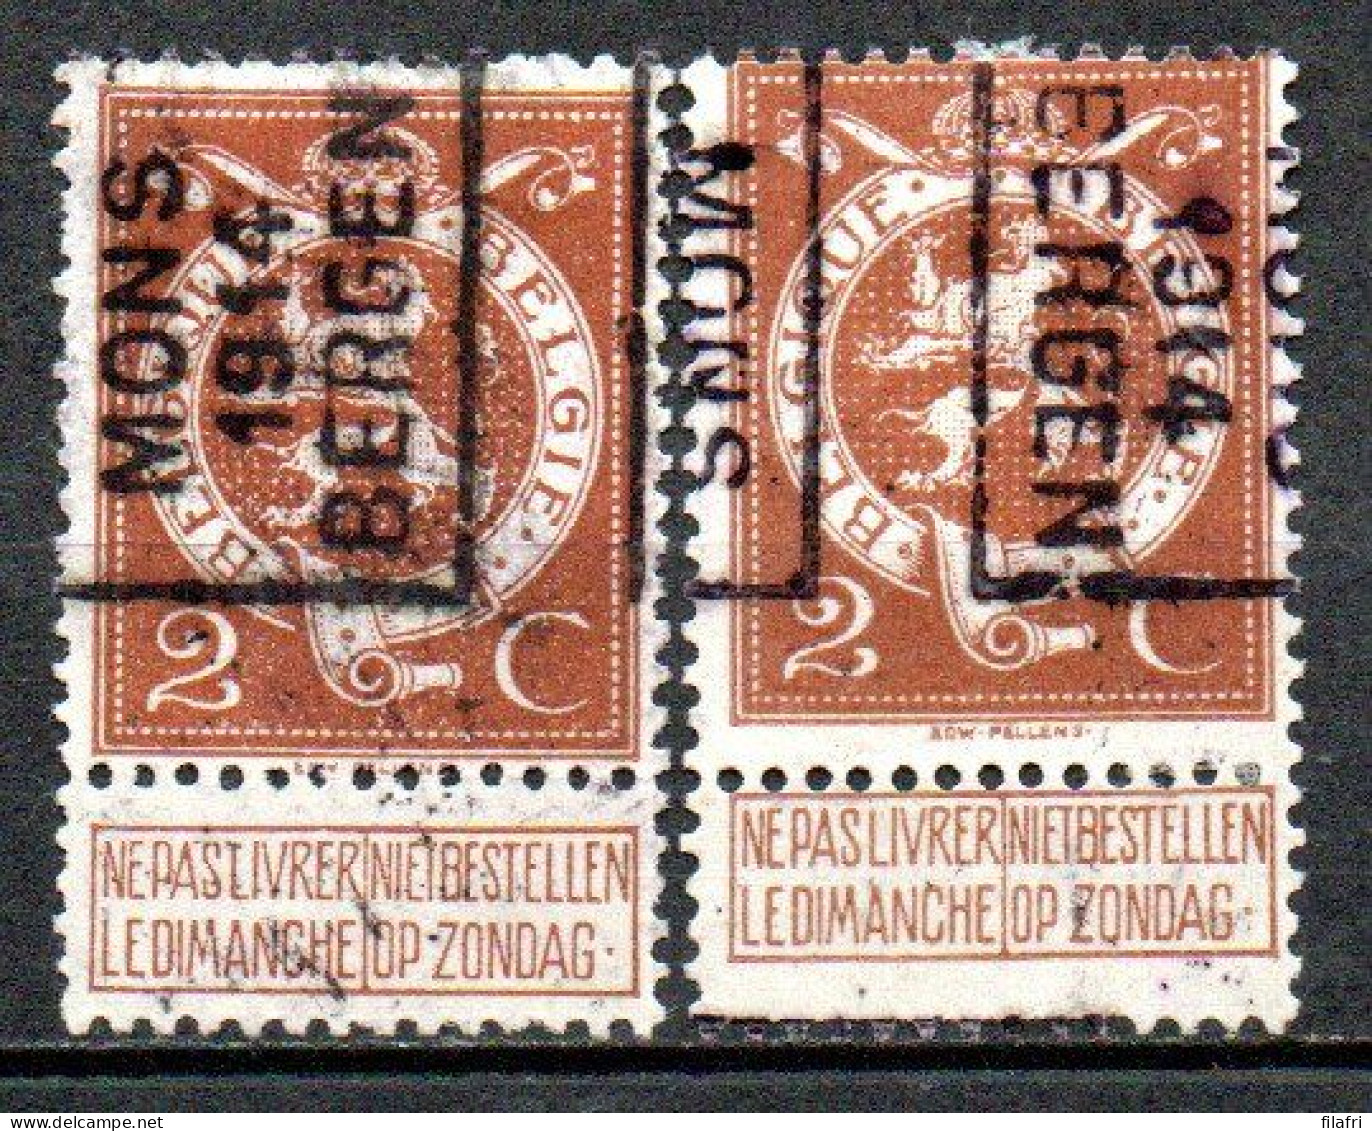 2367 Voorafstempeling Op Nr 109 - MONS 1914 BERGEN - Positie A & B - Roller Precancels 1910-19